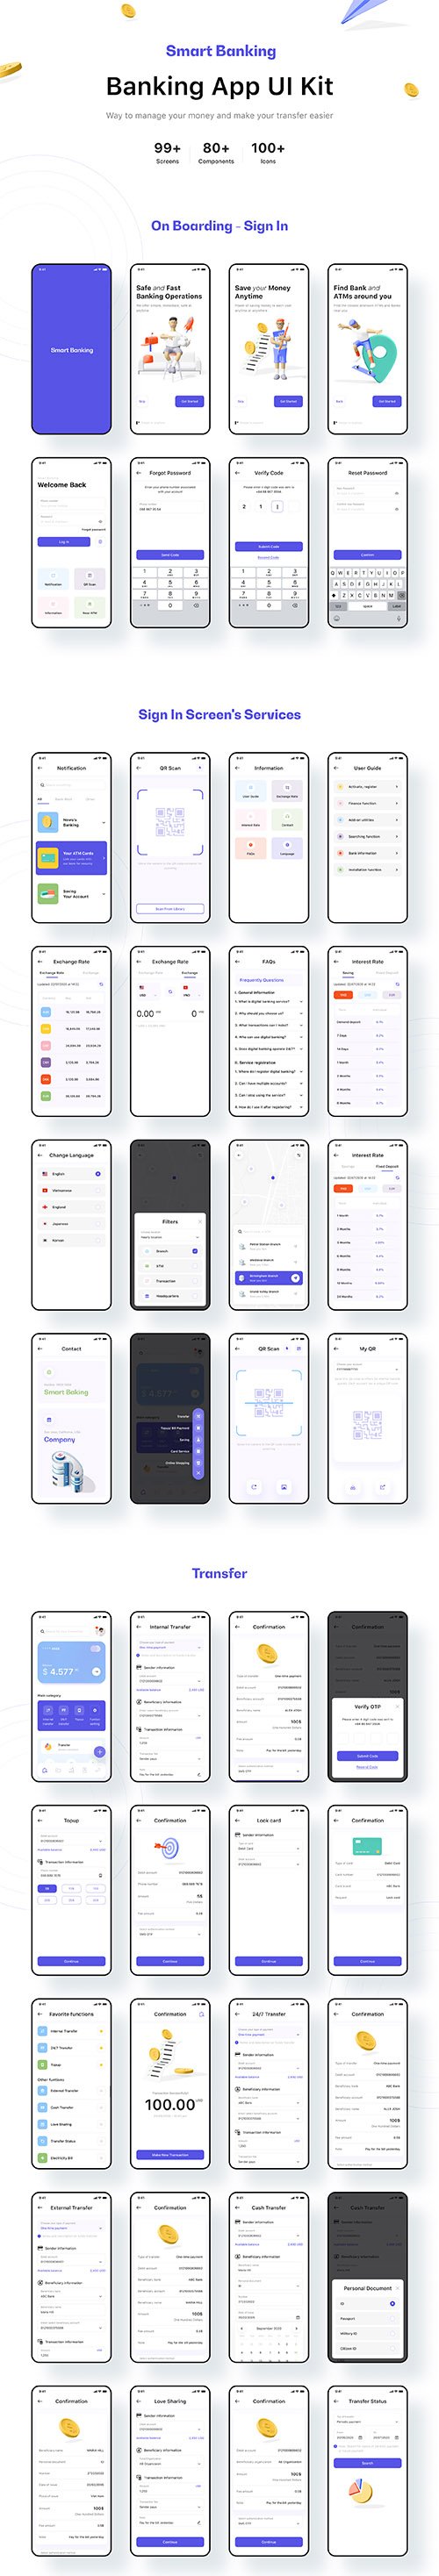 tmrw.bank - Smart Banking UI Kit